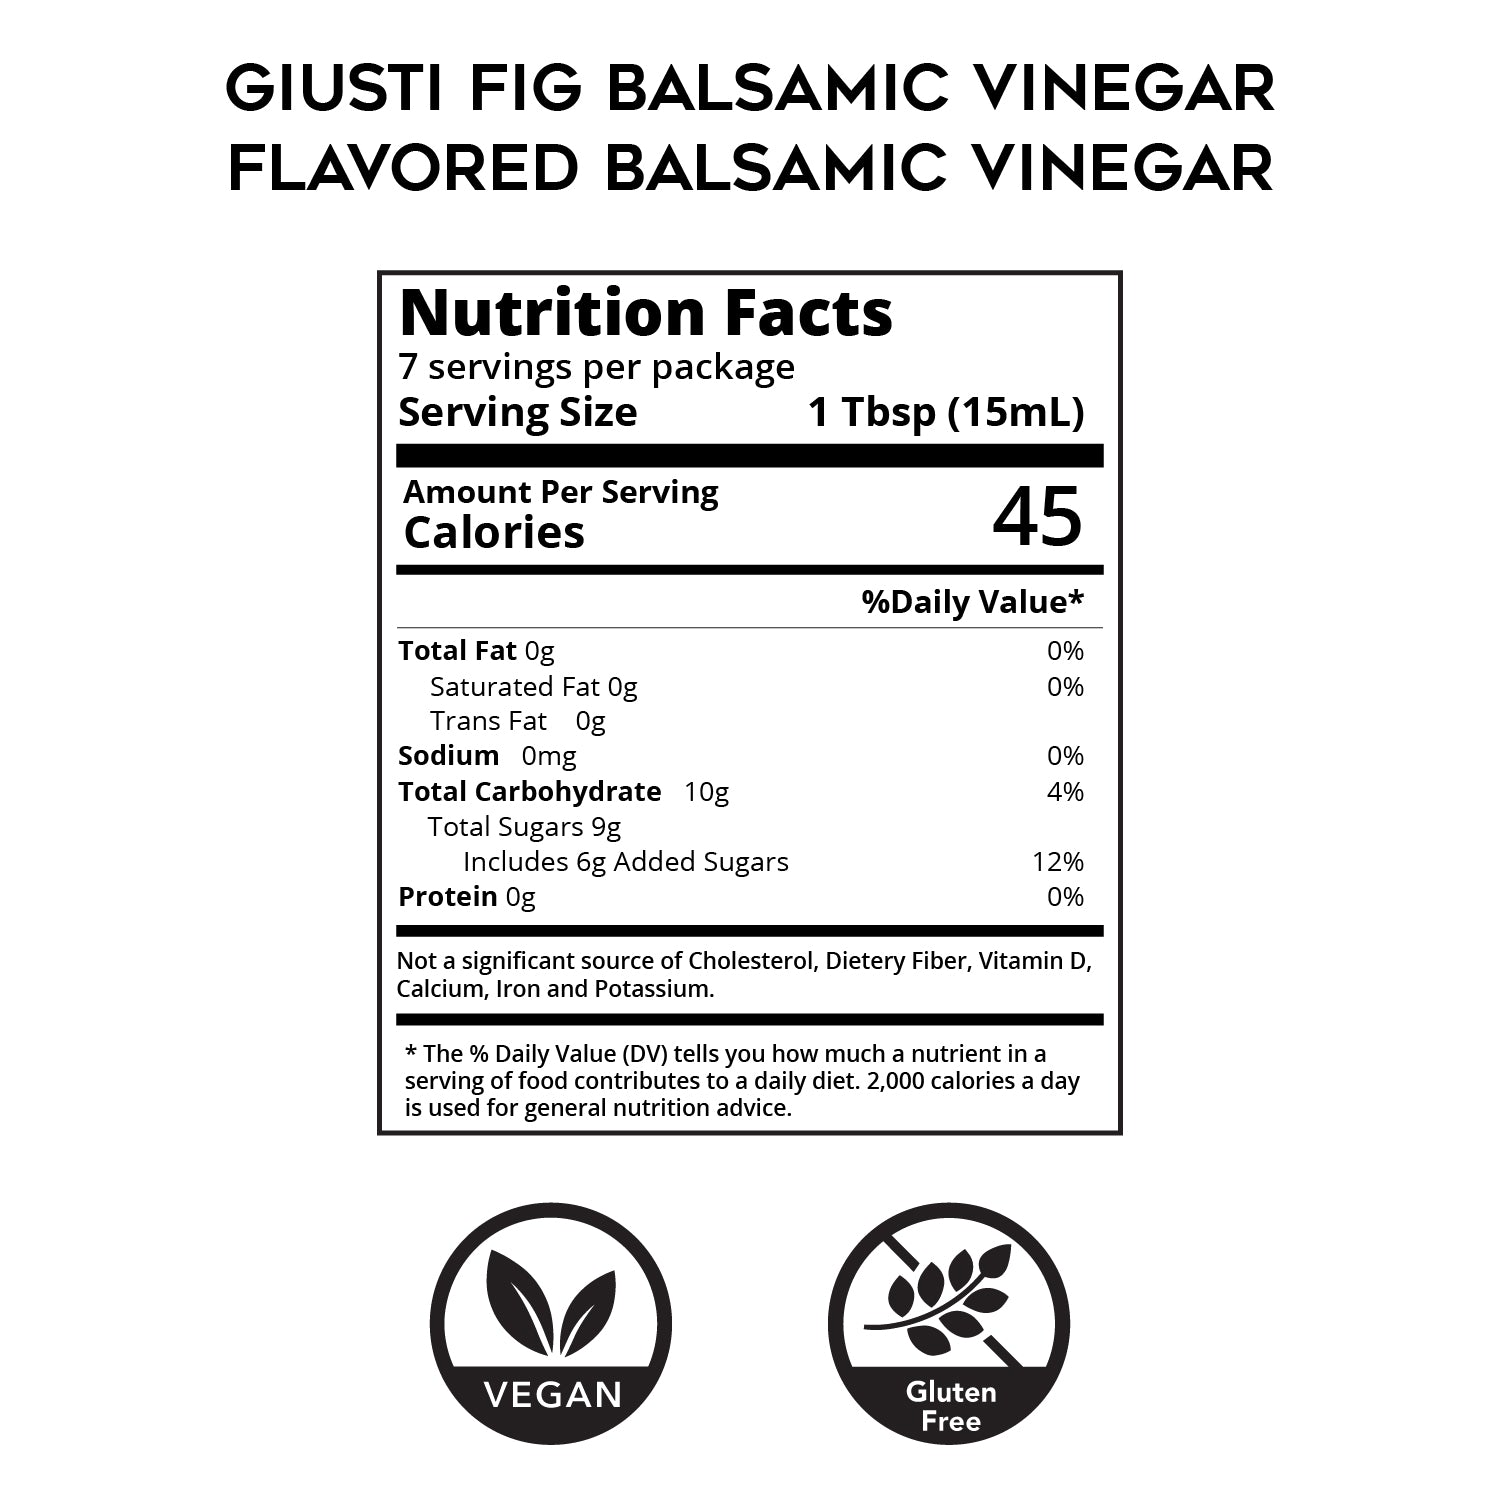 Fig Balsamic Vinegar - Flavored Balsamic Vinegar by Giusti